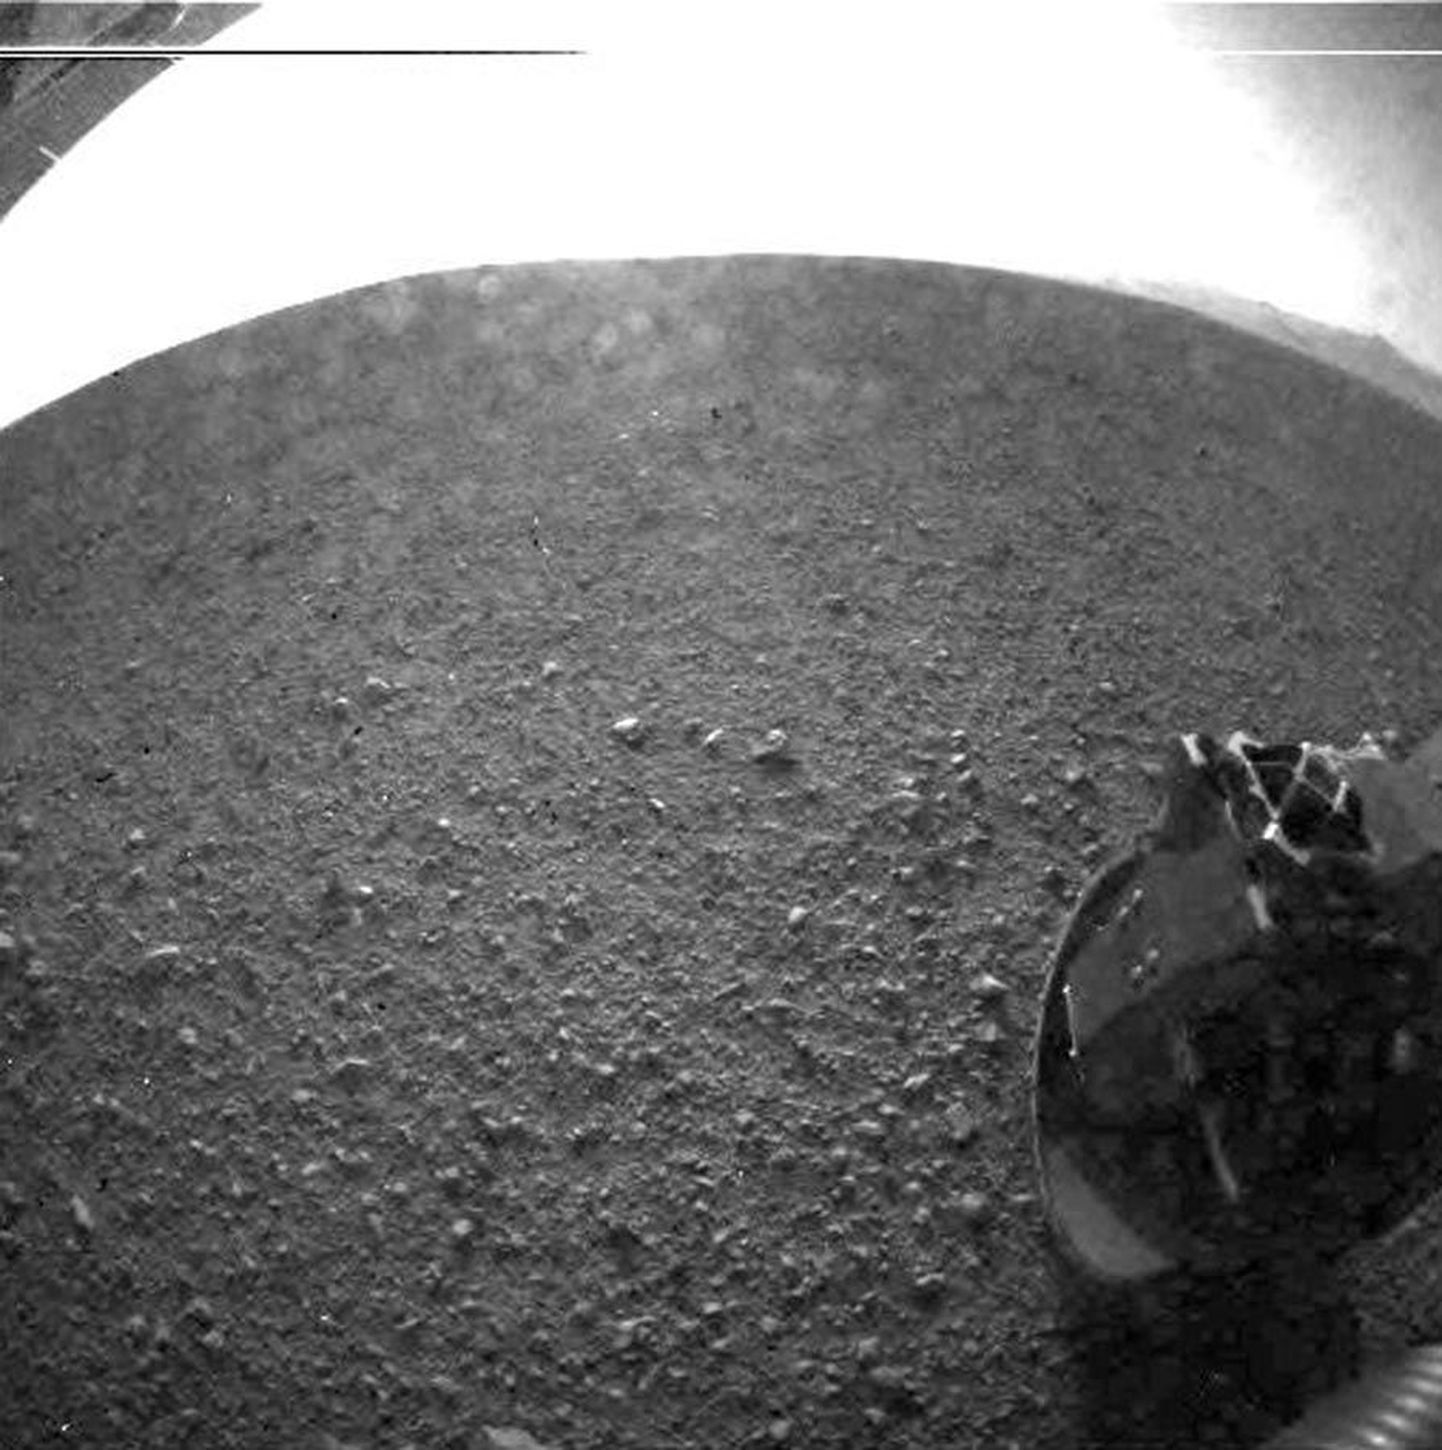 Tere tulemast Marsile! See oli üks esimesi ülesvõtteid, mille Marsile maabunud kosmoseaparaat klõpsas ja Maale läkitas.